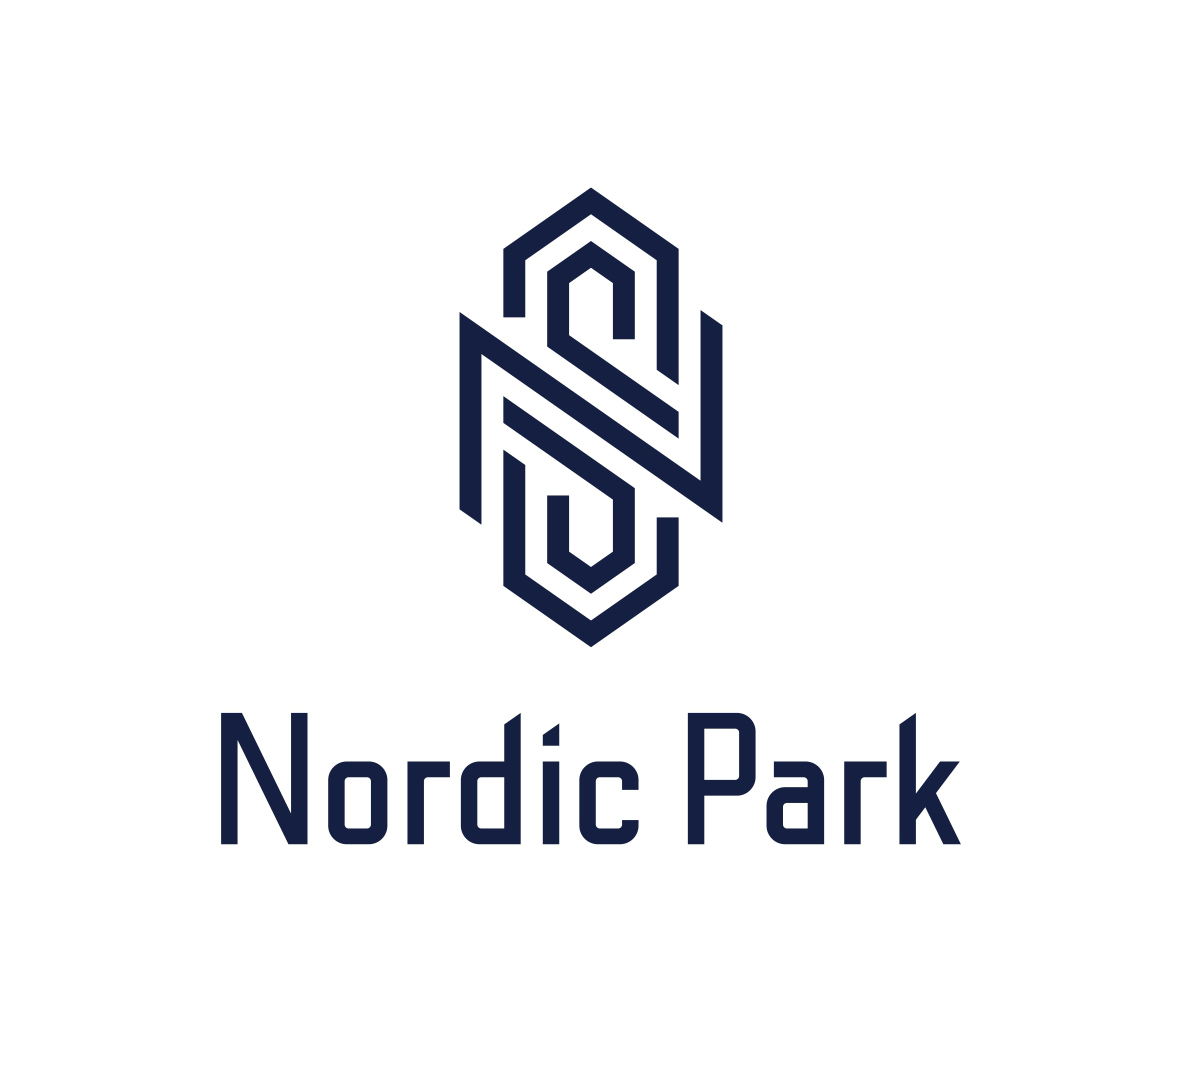 Нордик банк. Nordic Park коттеджный поселок. Нордик парк коттеджный поселок. Нордик коттеджный поселок. КП Нордик новая Рига.